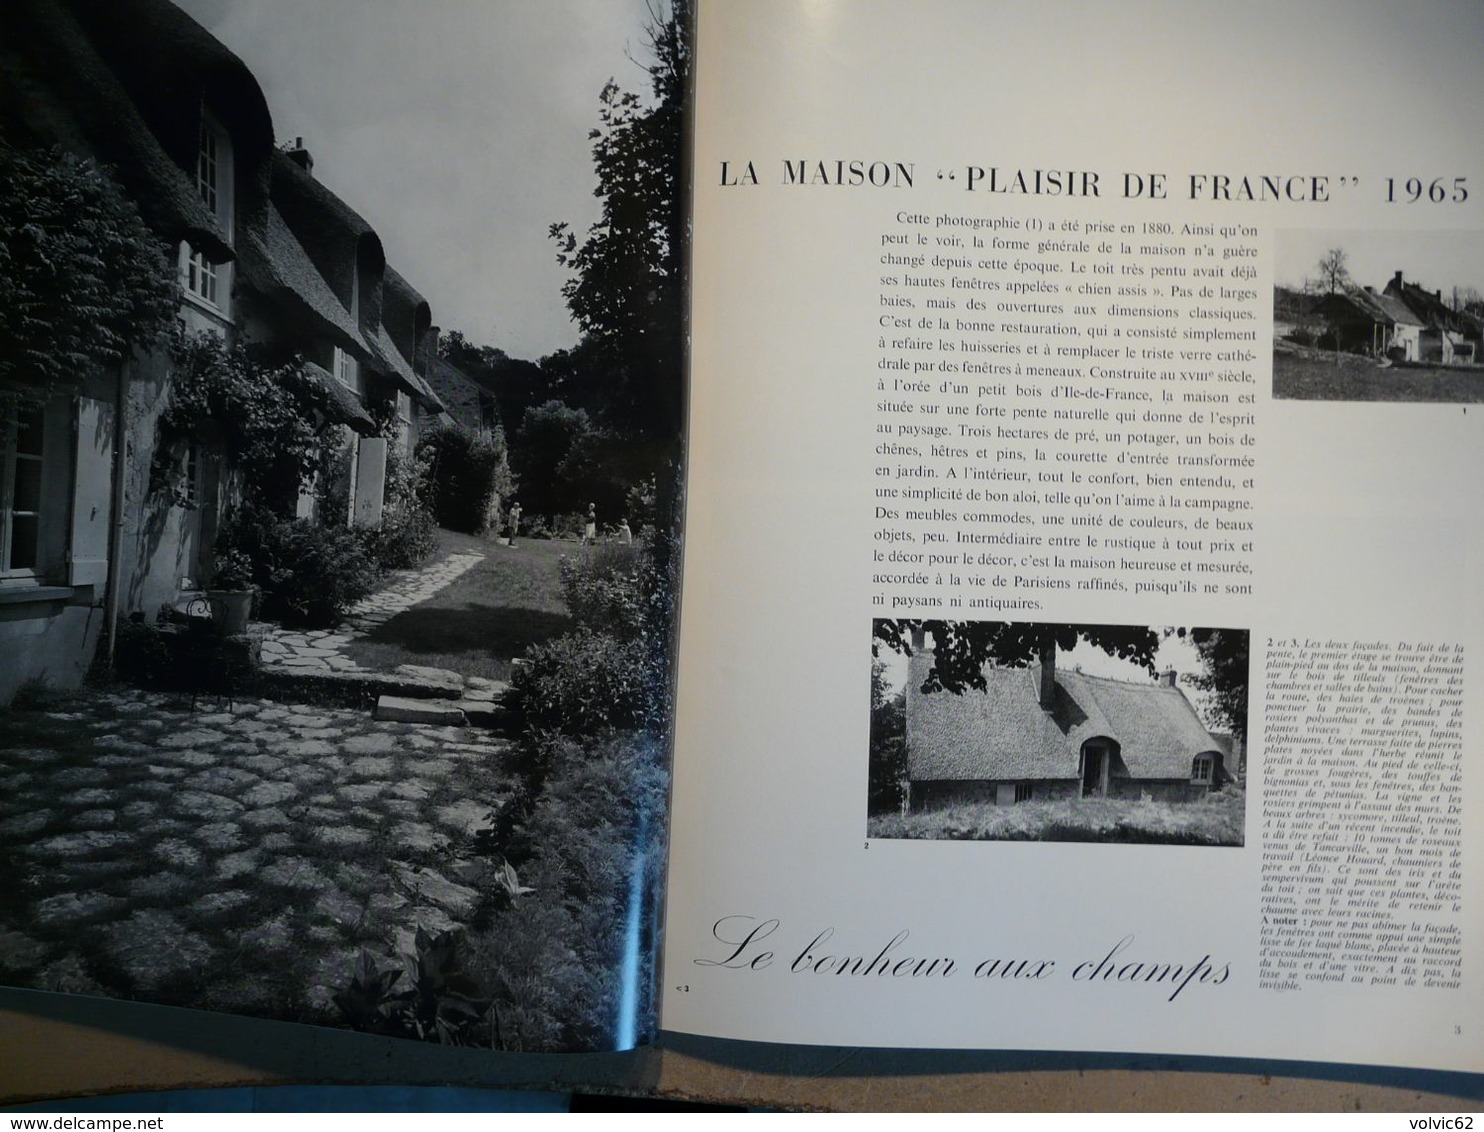 Plaisir de france 1965 thury harcourt bretagne bord de rance golfe saint florent draguignan lyons la foret saint paul